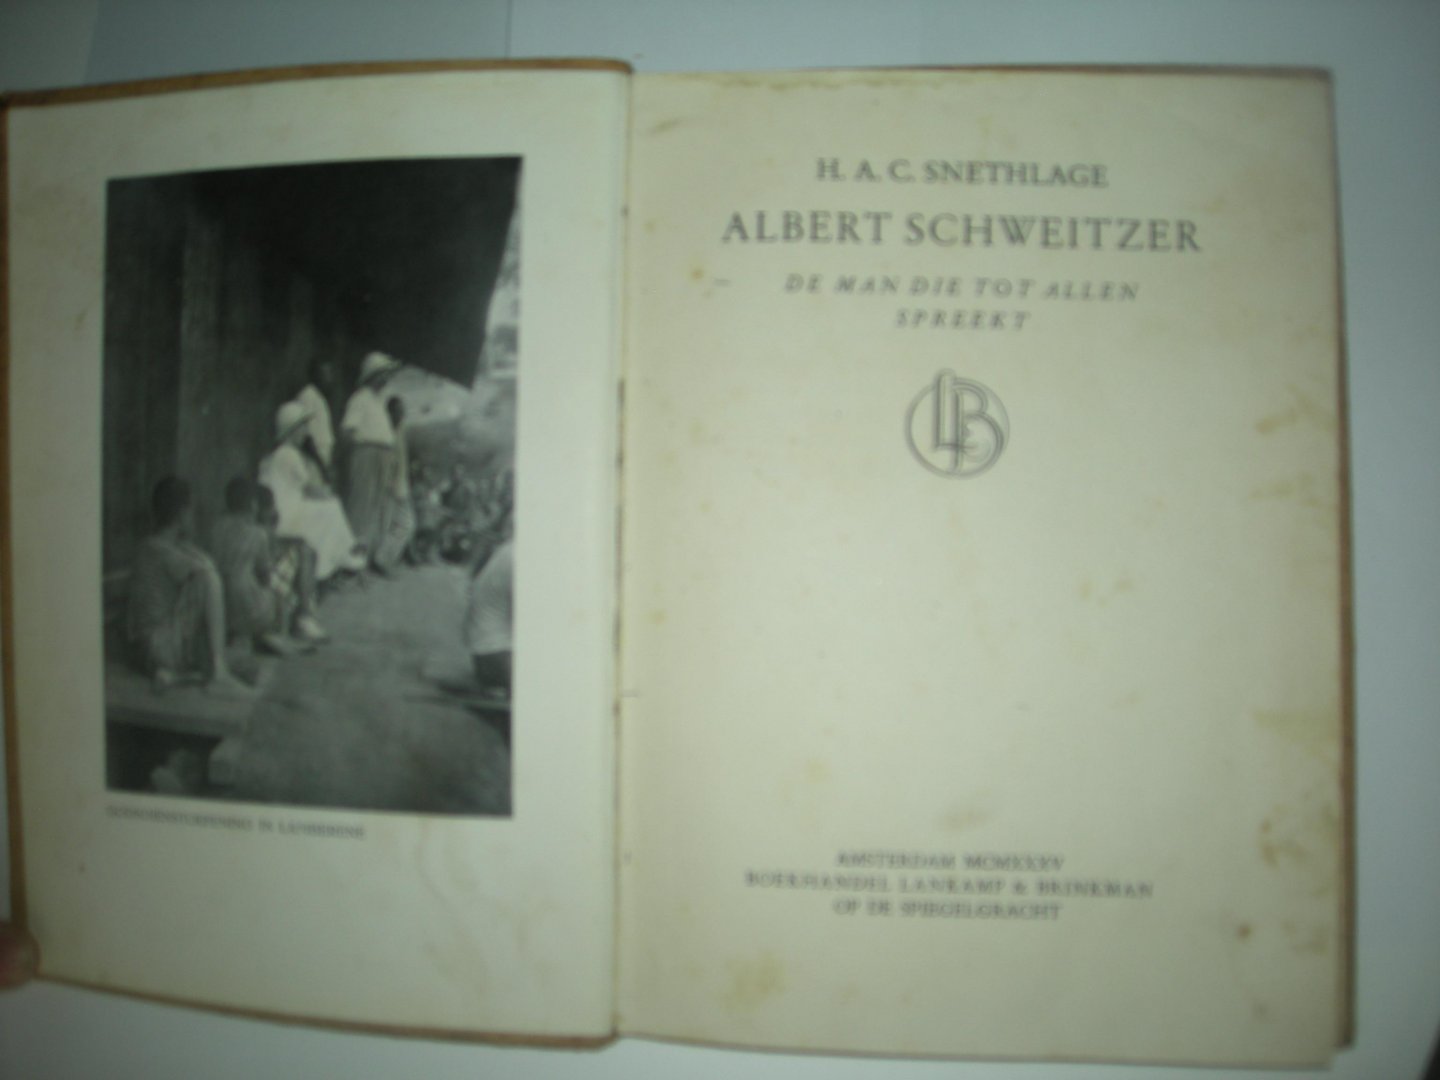 Snethlage, H.A.C. - Albert Schweitzer, de man die tot allen spreekt